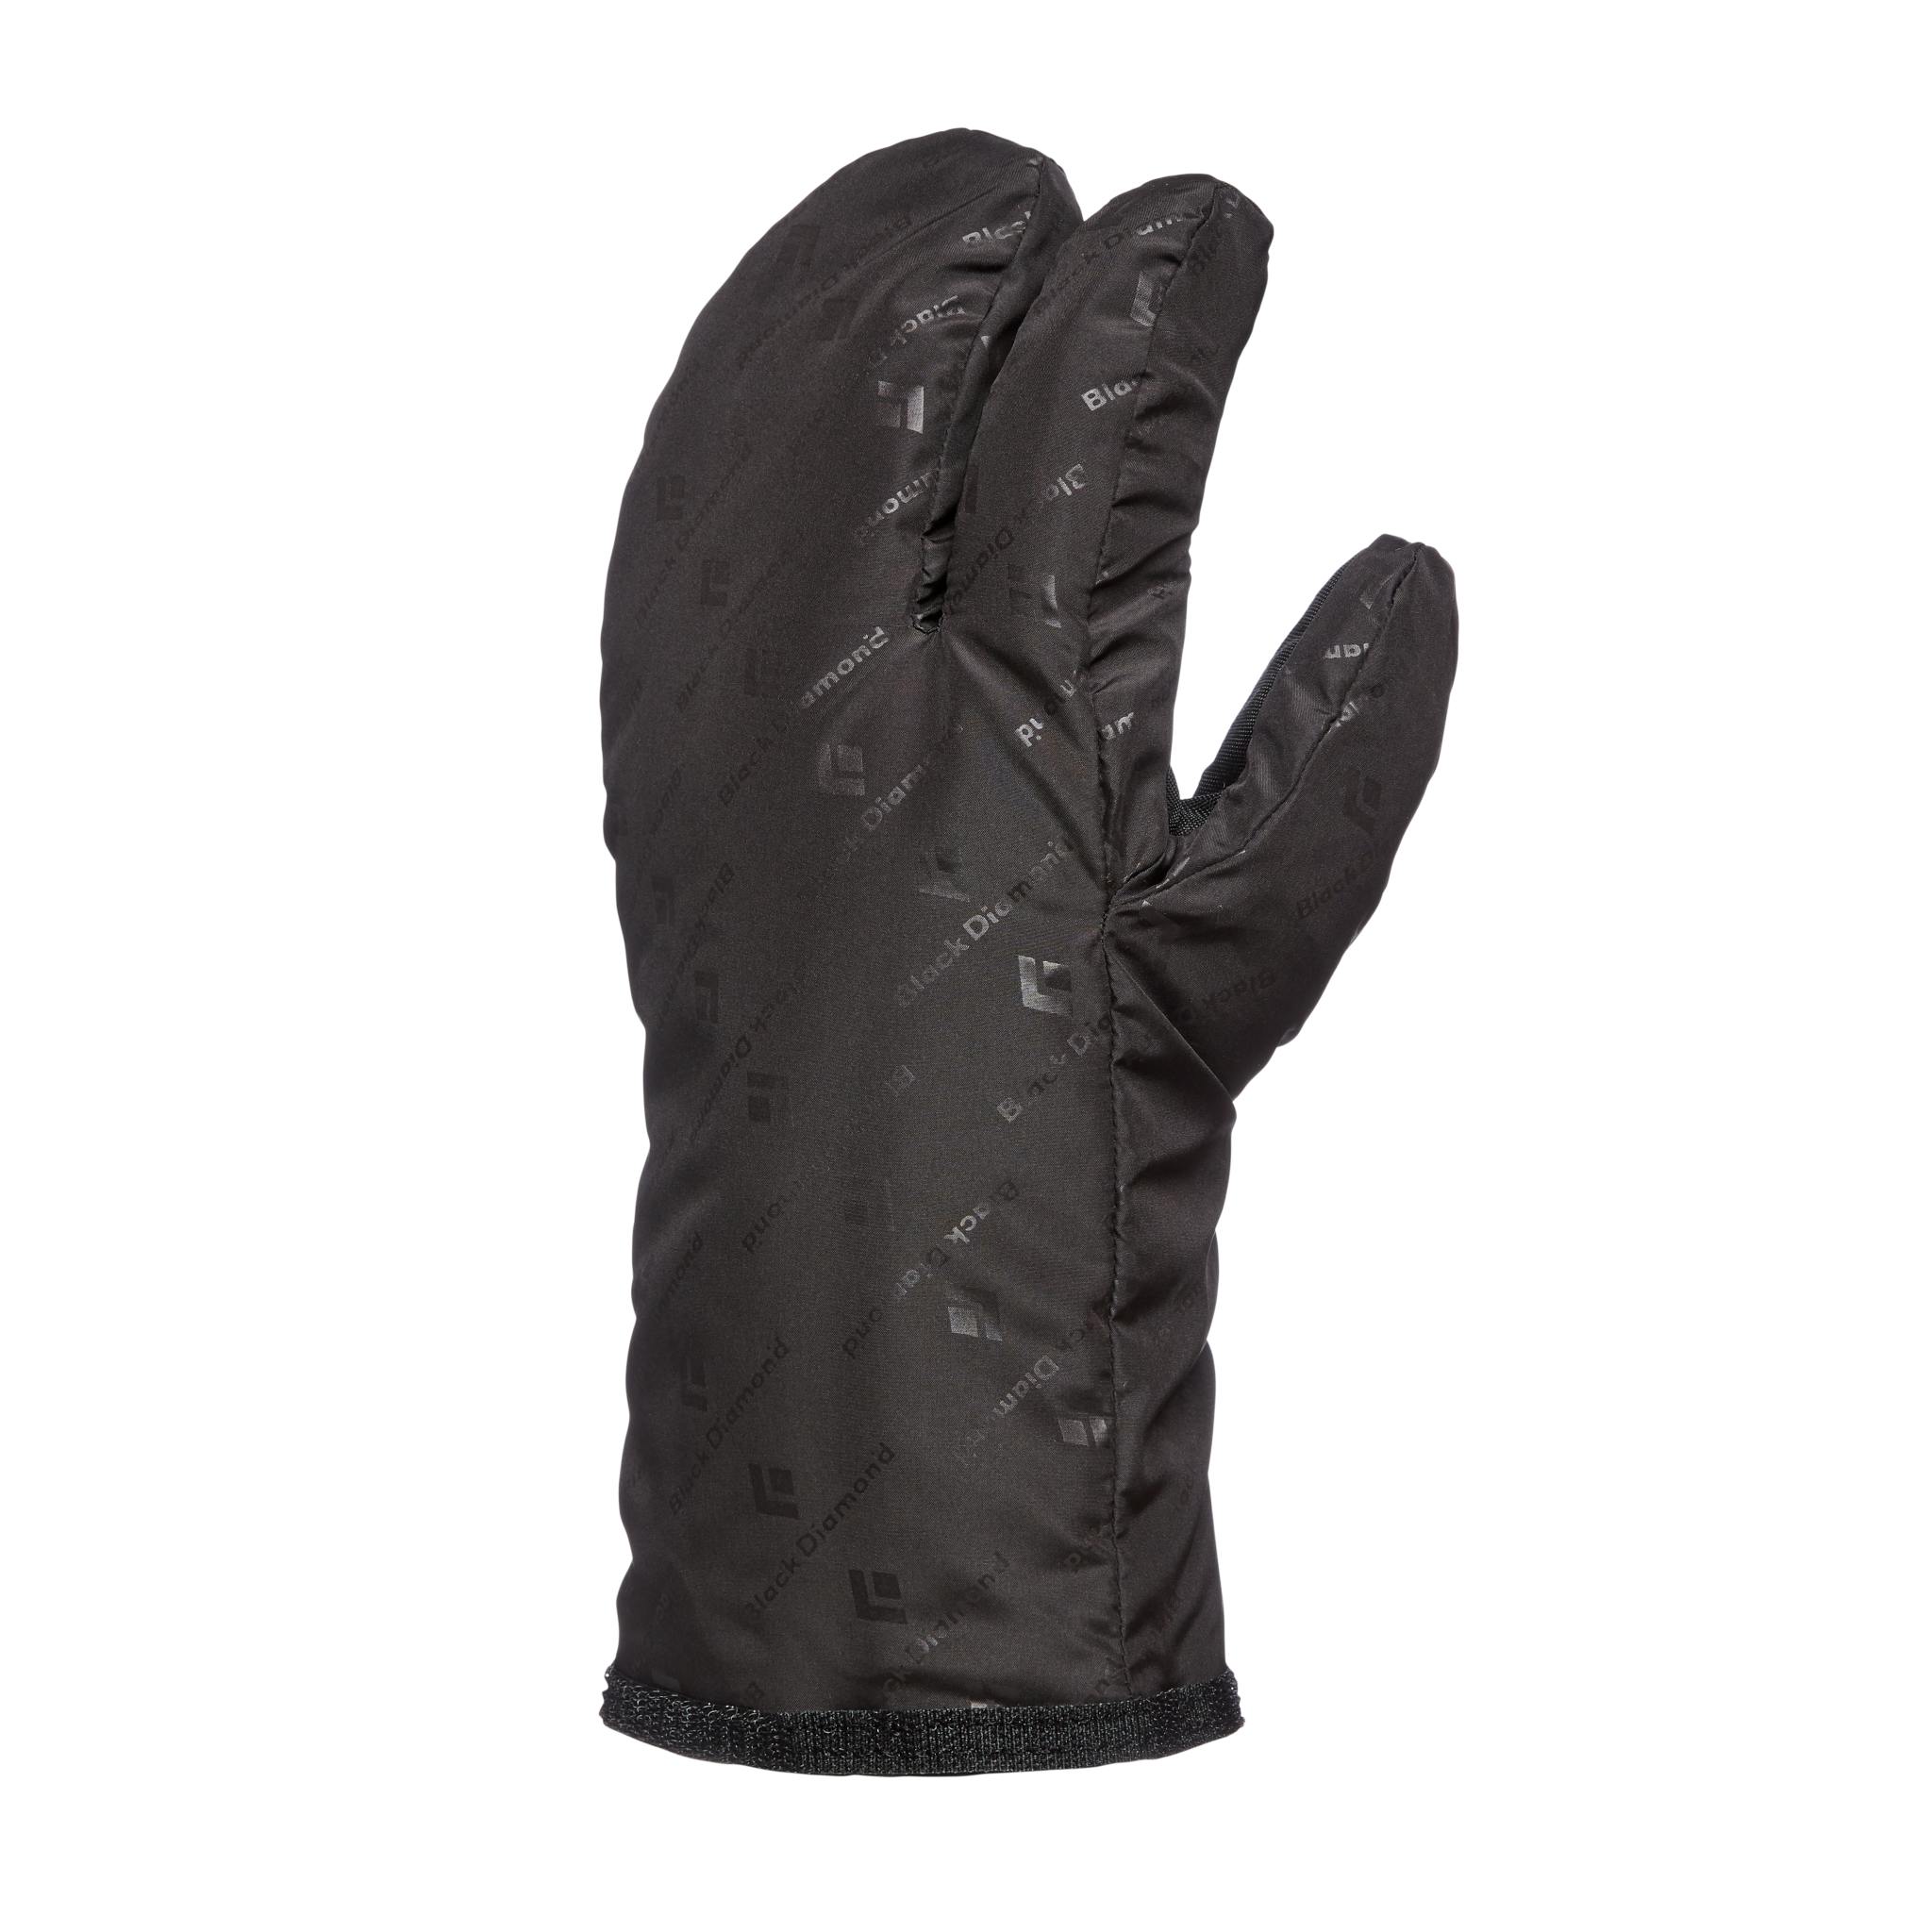 Soloist Finger Gloves | Black Diamond Equipment